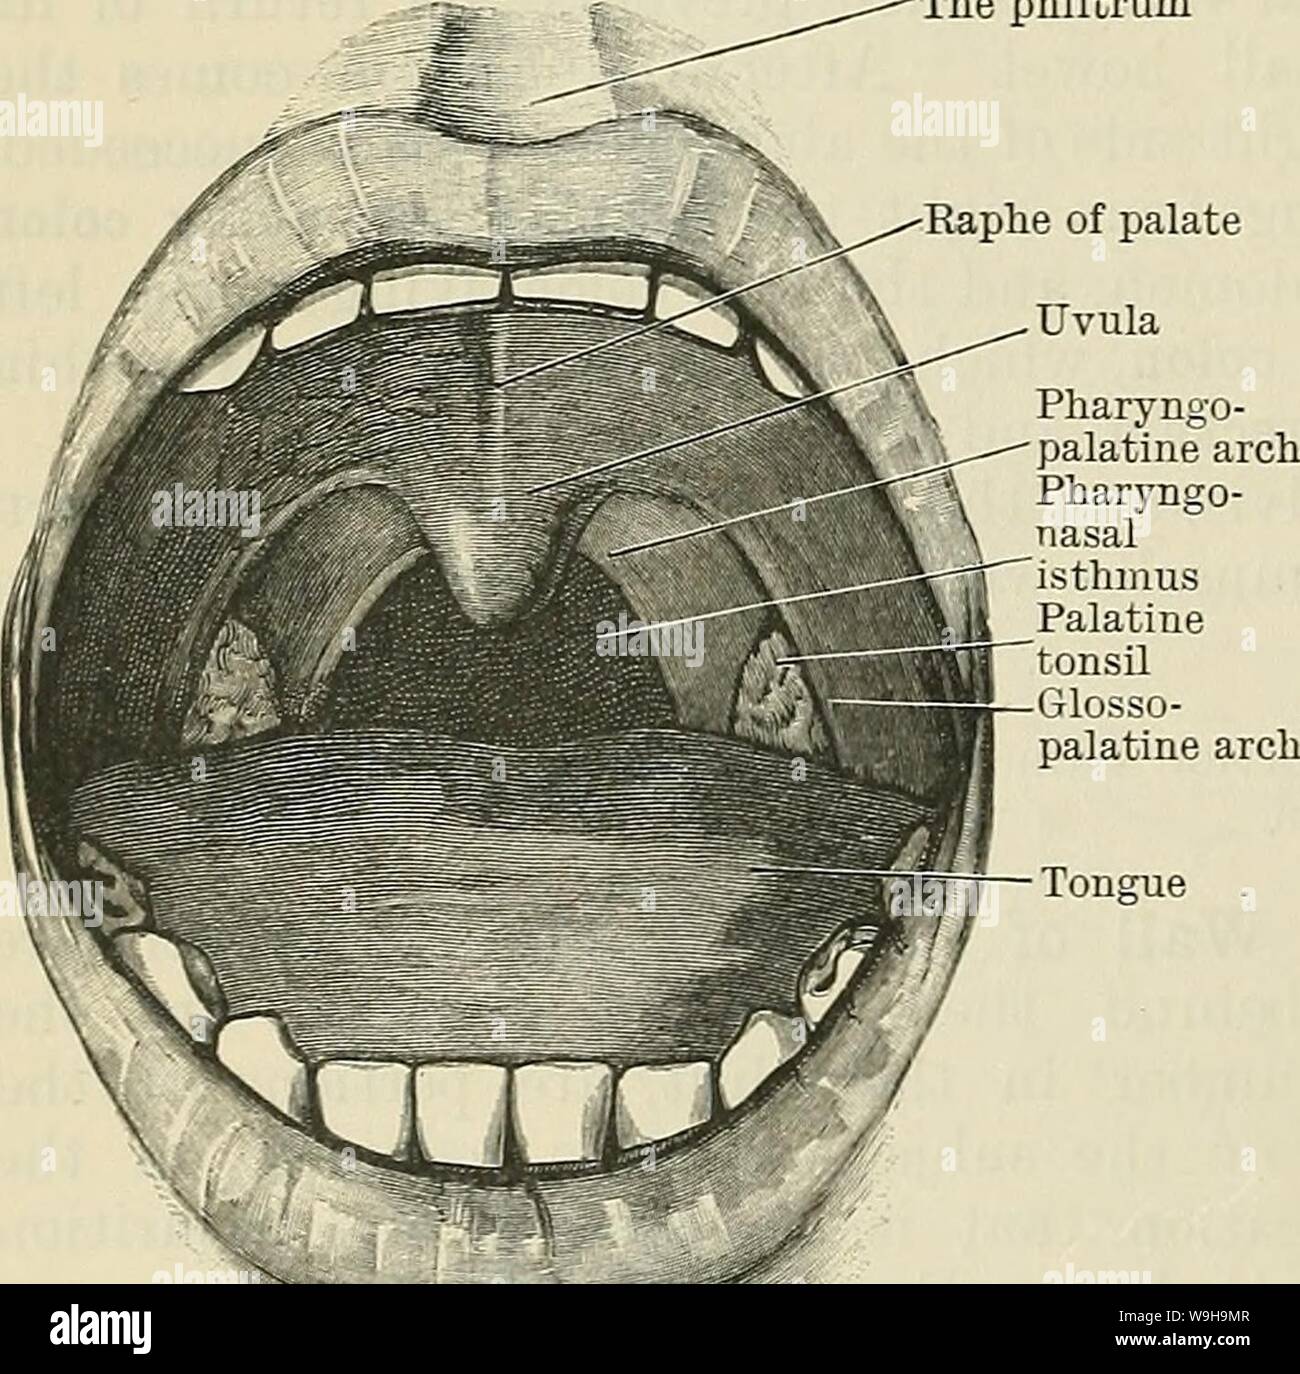 Image d'Archive de la page 1139 du Cunningham's Text-book d'anatomie (1914). Cunningham's Text-book d'anatomie cunninghamstextb00cunn Année : 1914 ( 1106 LE SYSTÈME DIGESTIF. III. Les glandes digestives accessoire.-La plus importante est le foie (Hepar), qui occupe la partie supérieure et la partie droite de la cavité abdominale, juste au-dessous du diaphragme, et sa sécrétion-le-biliaires est véhiculée dans le duodénum par le canal cholédoque (choledochus). Le pancréas, à côté de la taille, se trouve sur l'avant de la colonne vertébrale, avec son extrémité droite ou tête reposant dans la concavité du duodénum, dans lequel Banque D'Images